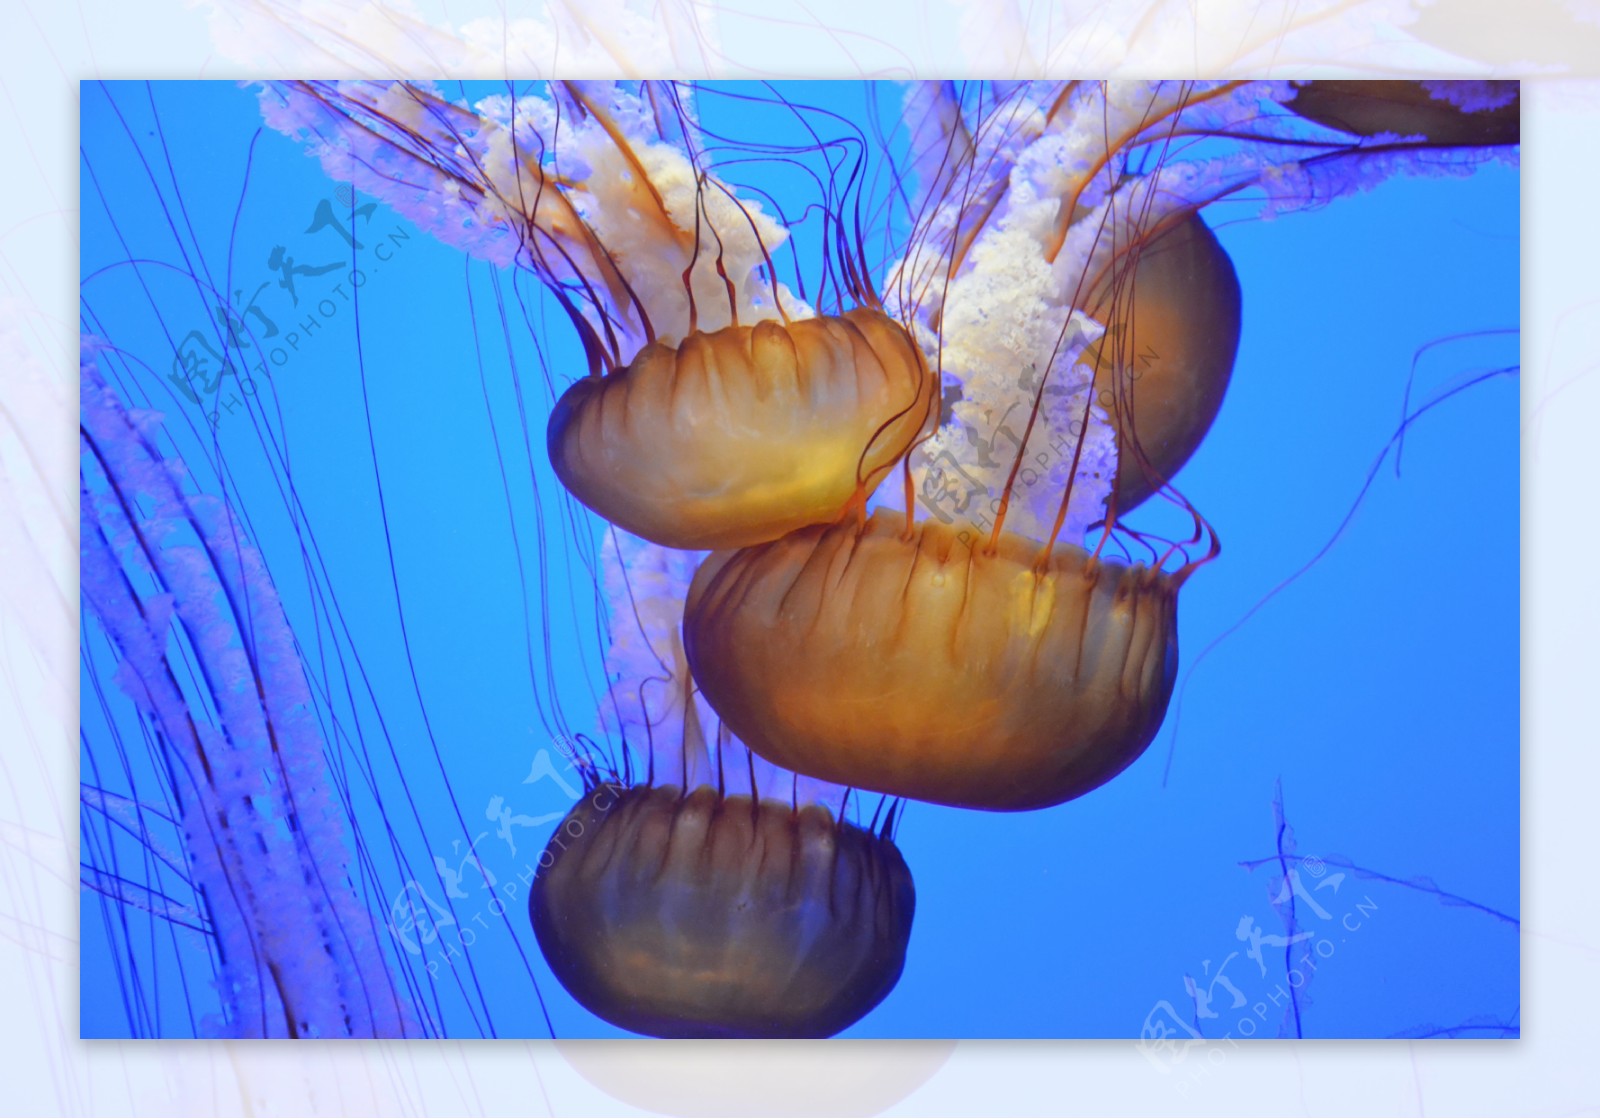 海底水母图片